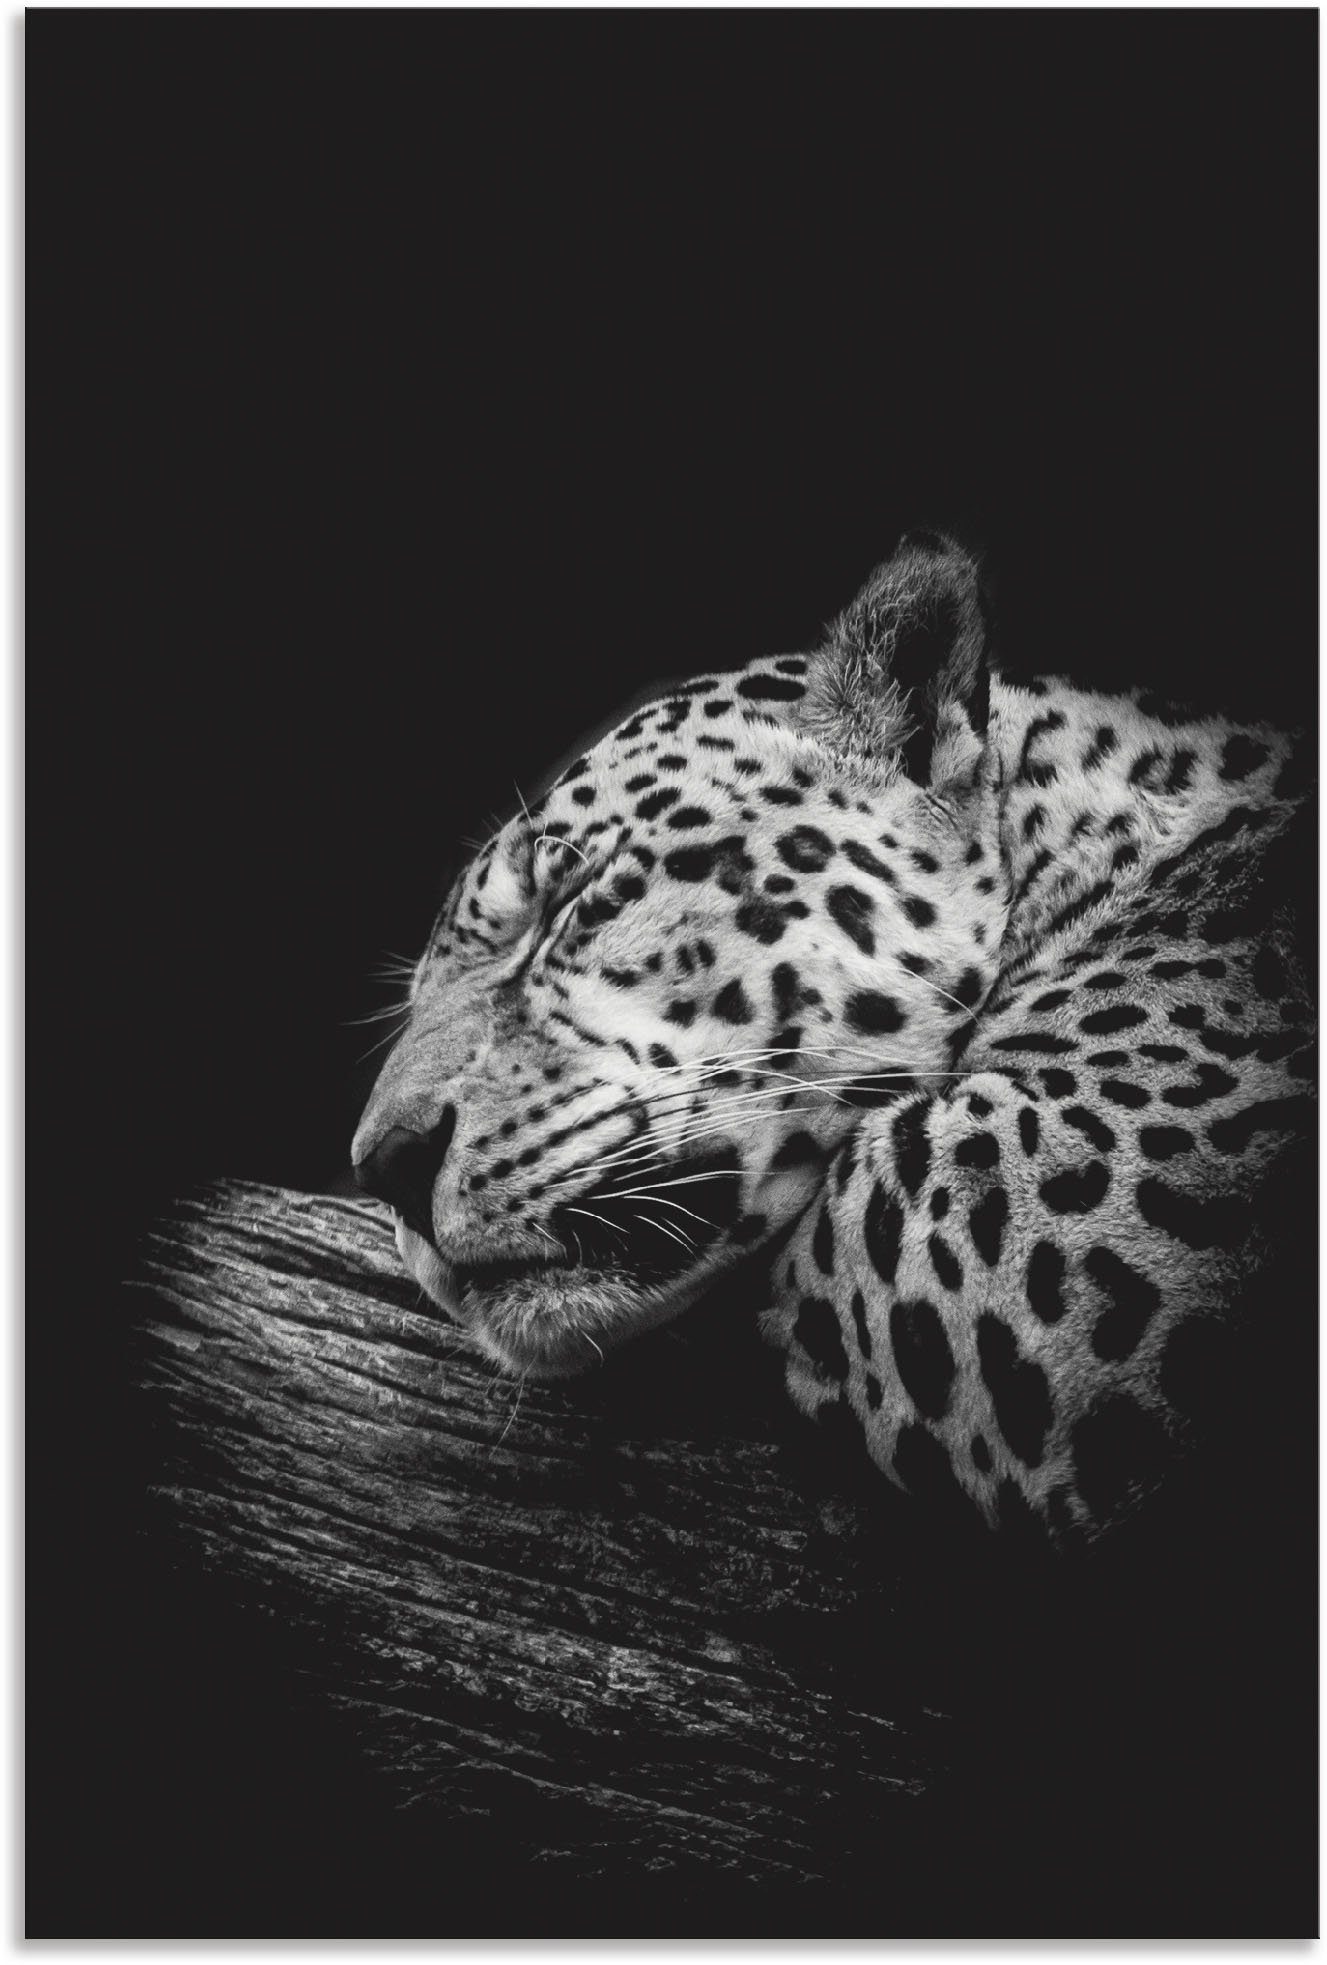 Artland Artprint Der schlafende Jaguar in vele afmetingen & productsoorten - artprint van aluminium / artprint voor buiten, artprint op linnen, poster, muursticker / wandfolie ook